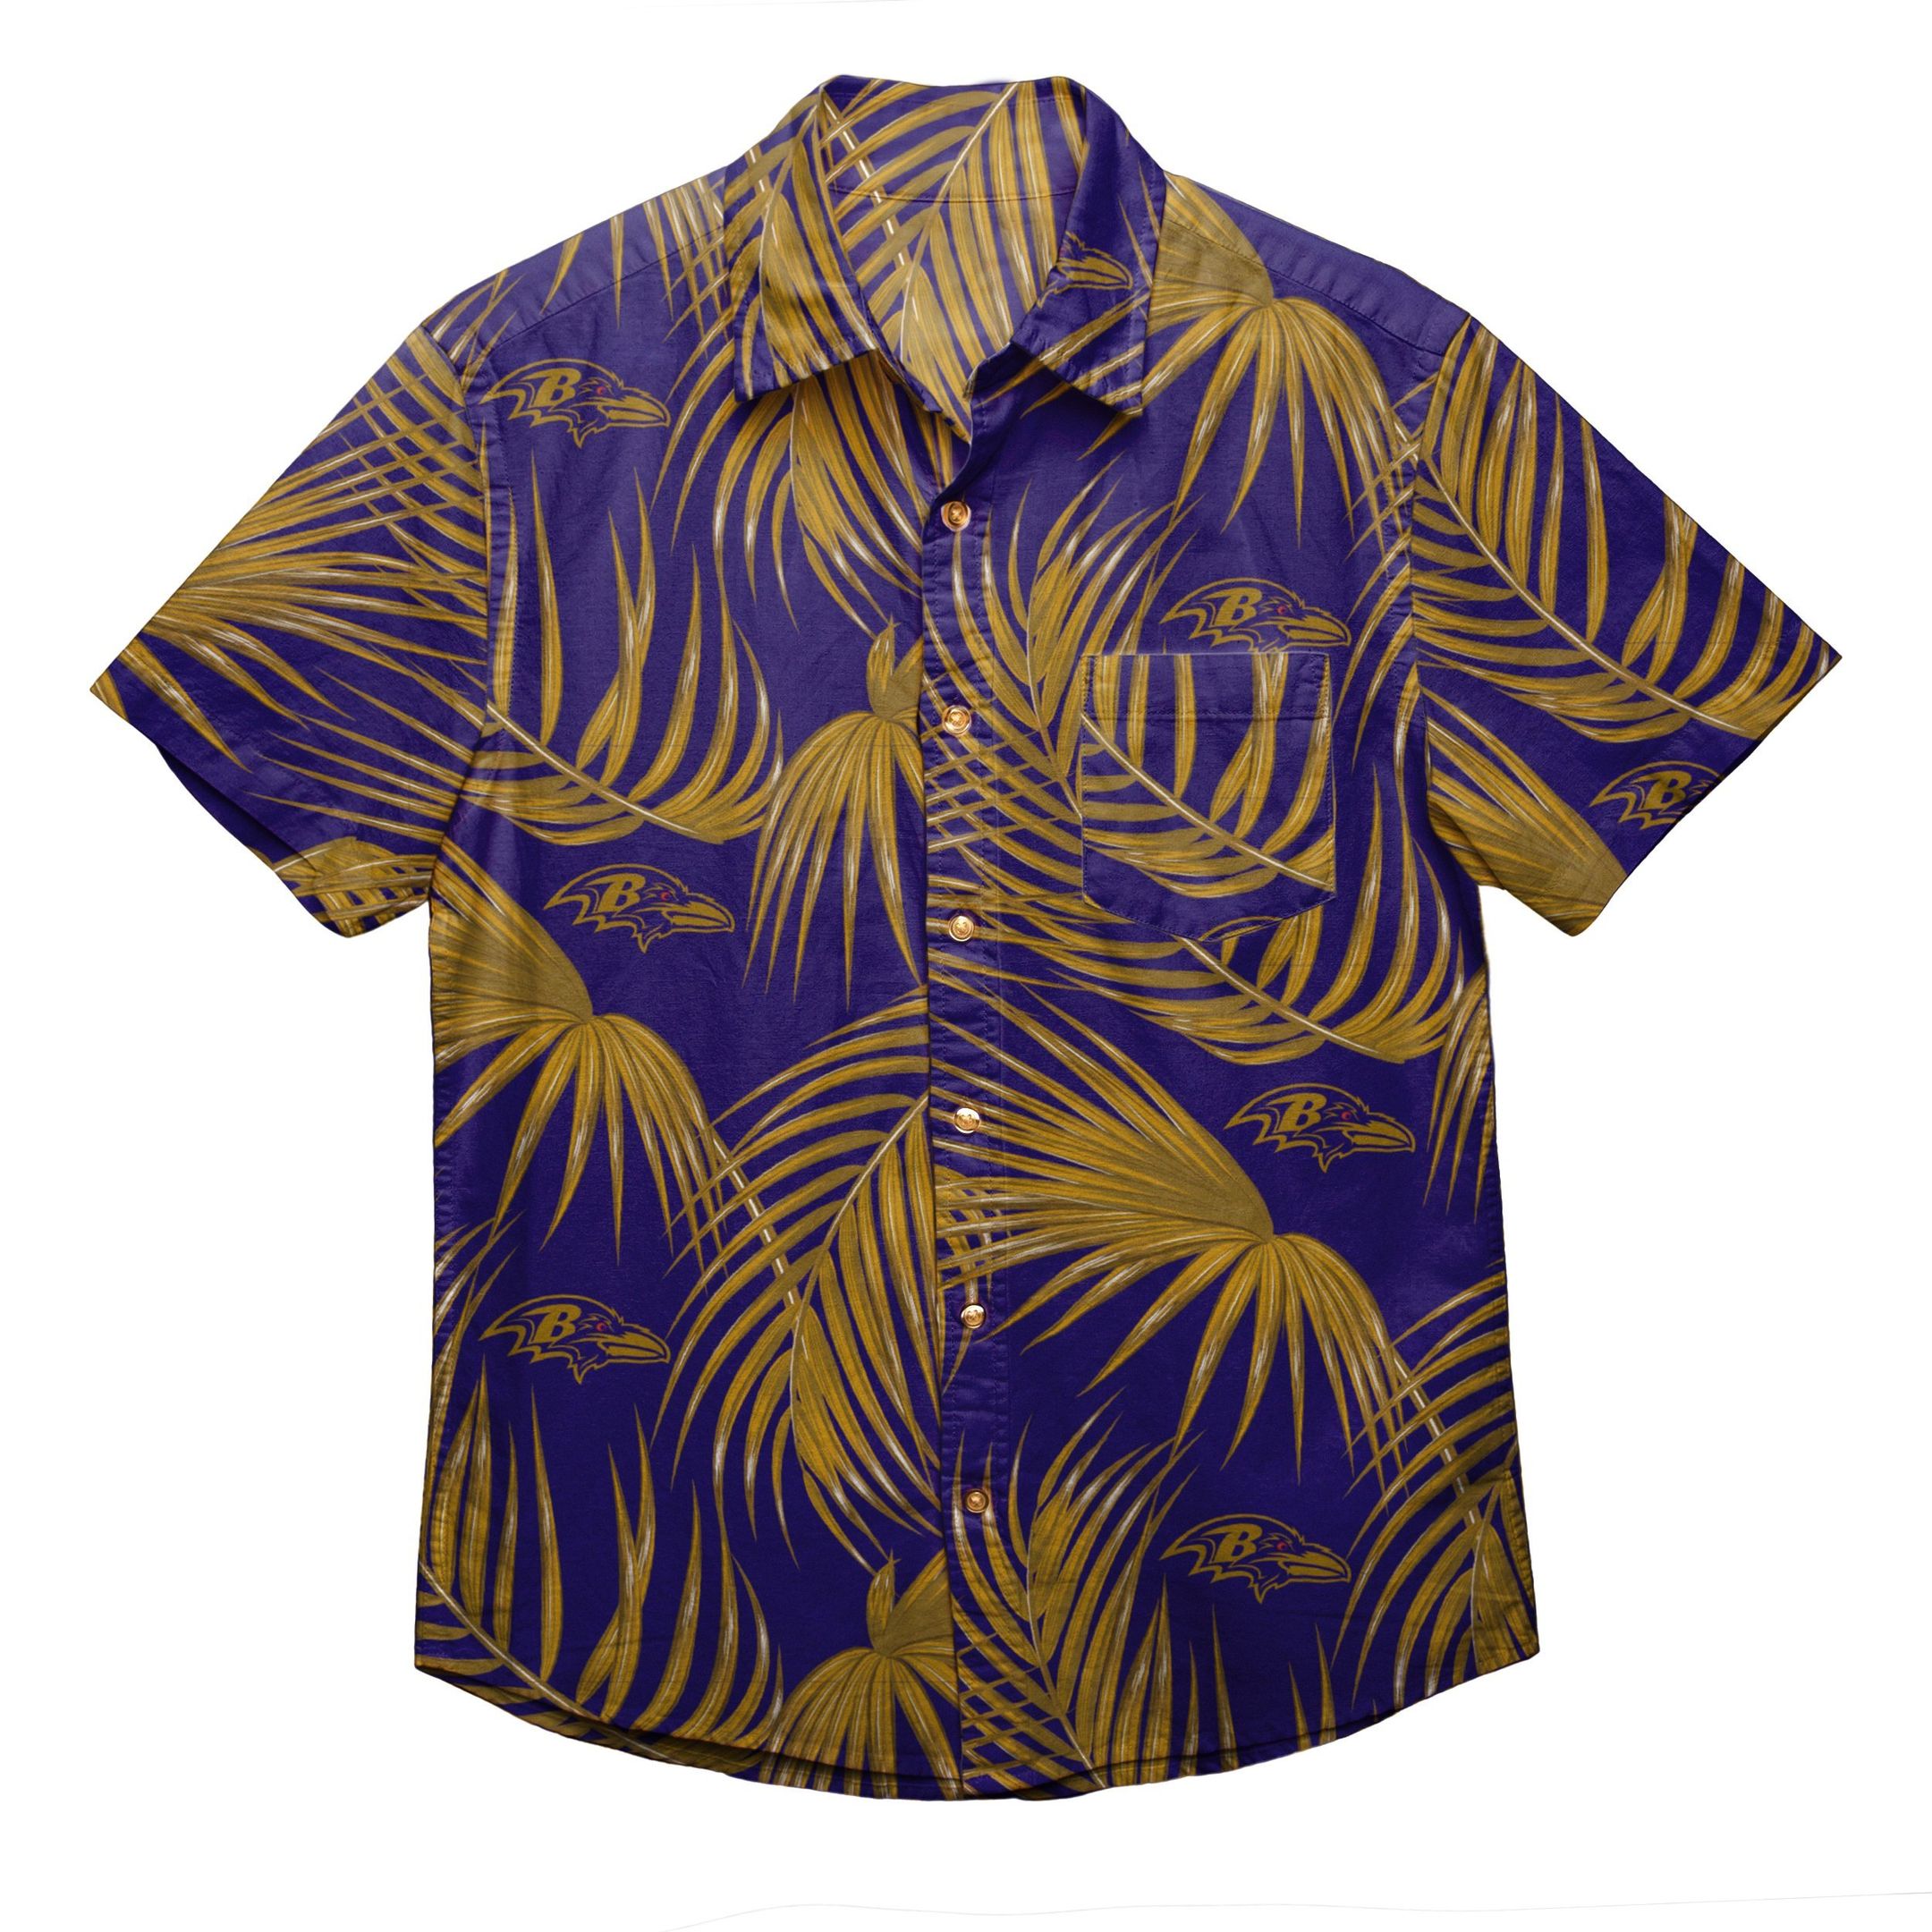 Baltimore Ravens Nfl Mens Hawaiian Button Up Shirt